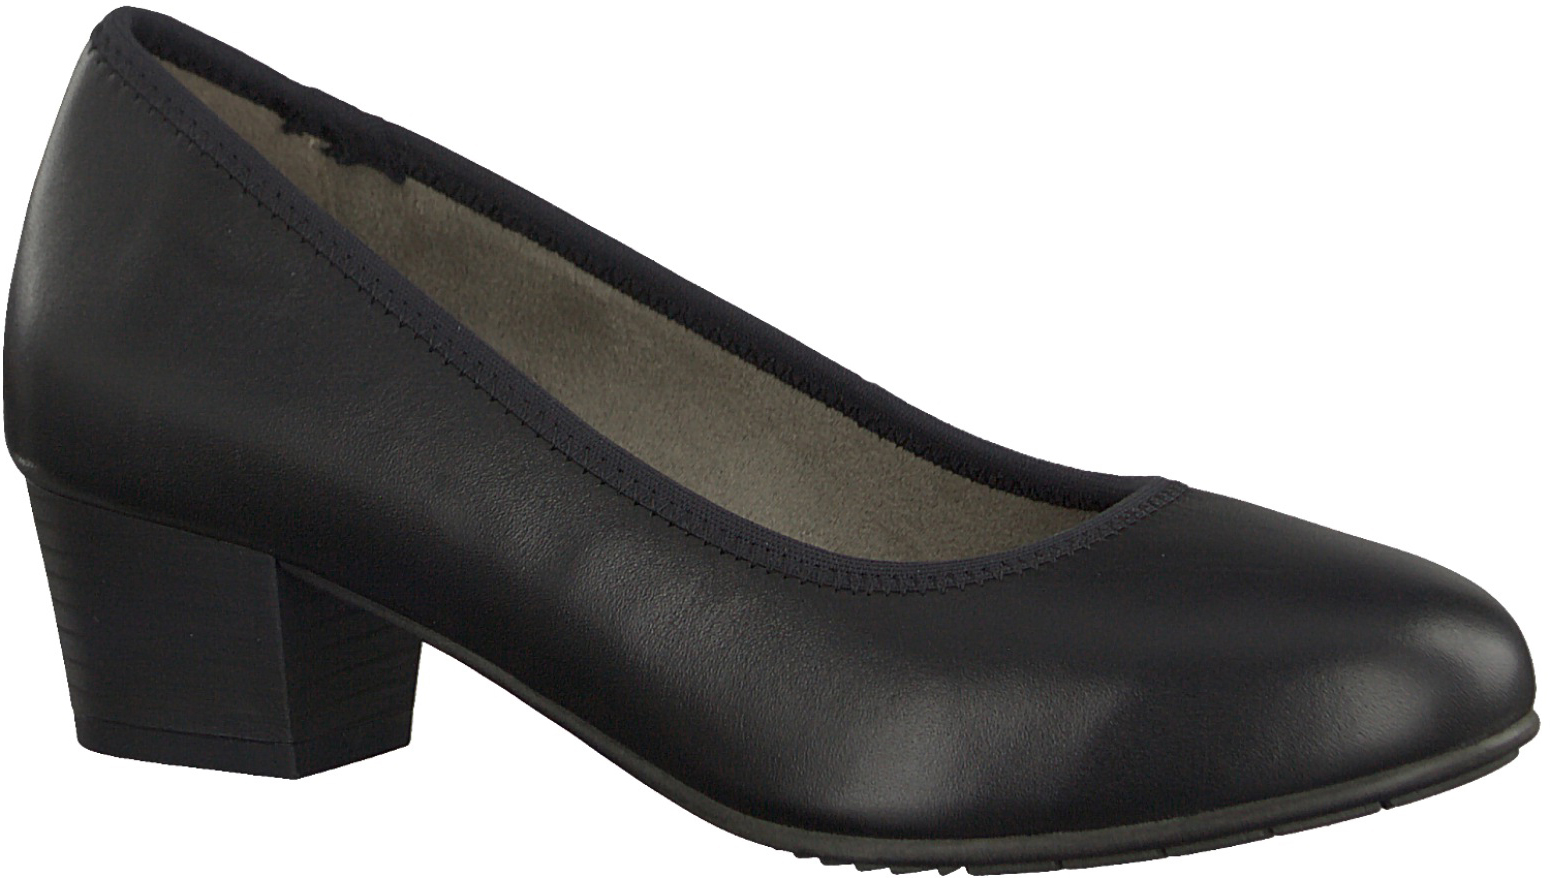 Туфли женские Jana, цвет: черный. 8-8-22303-20-022/220. Размер 40